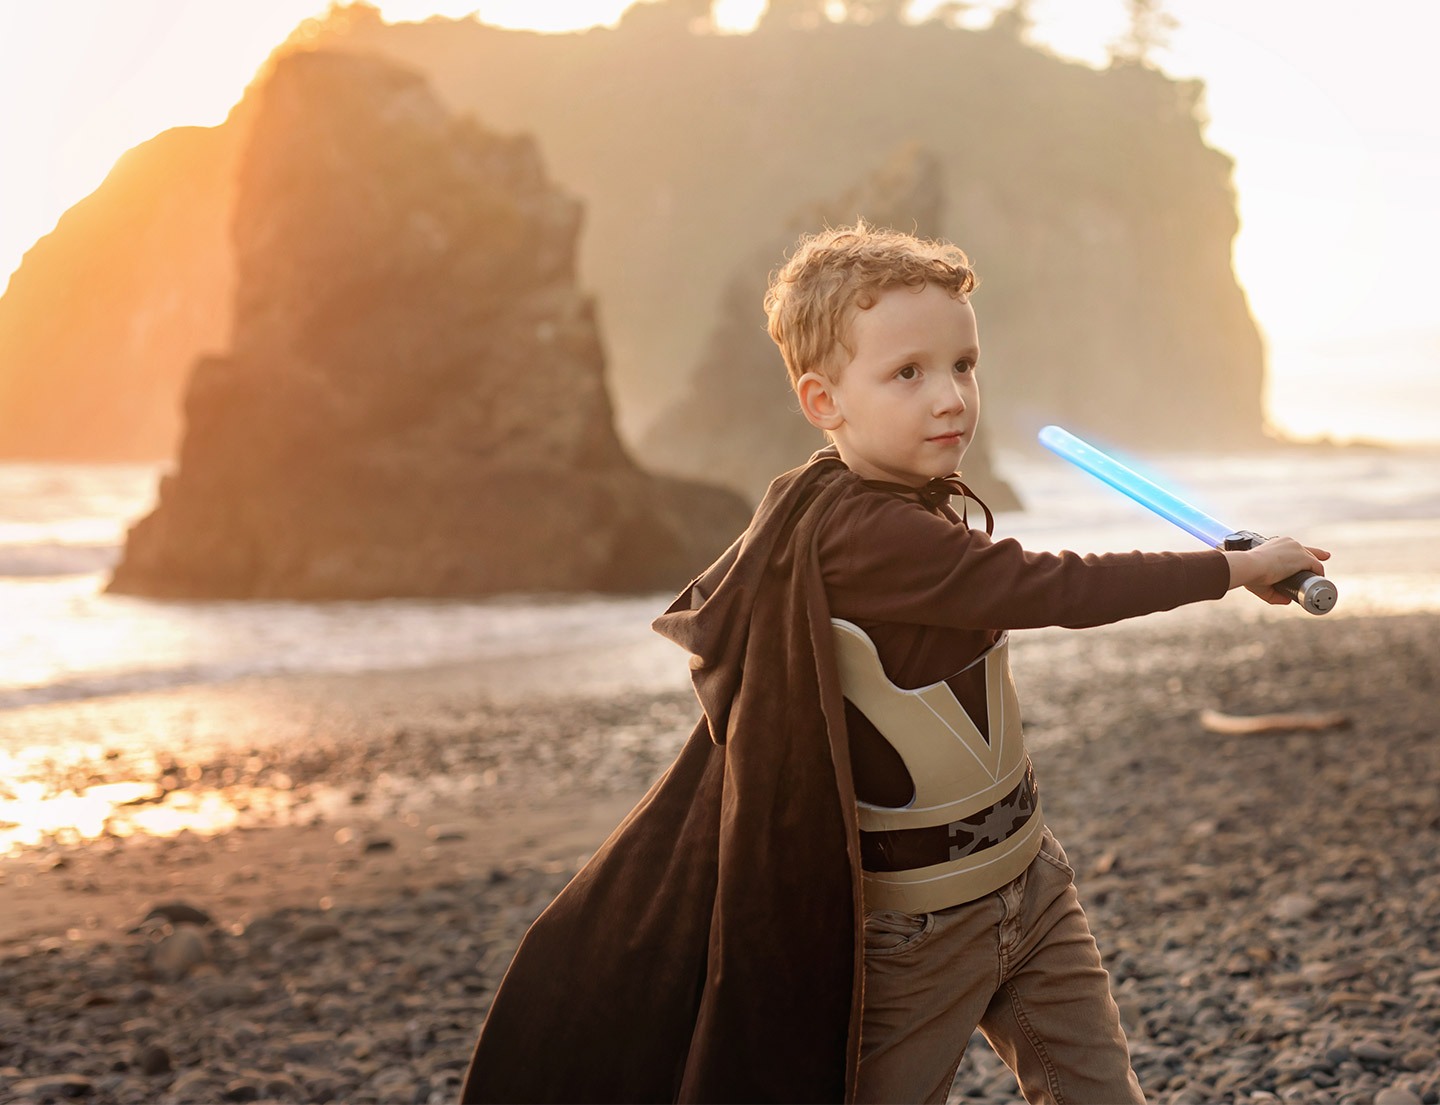 Liam disfrazado de Obi-wan Kenobi, blandiendo un sable de luz